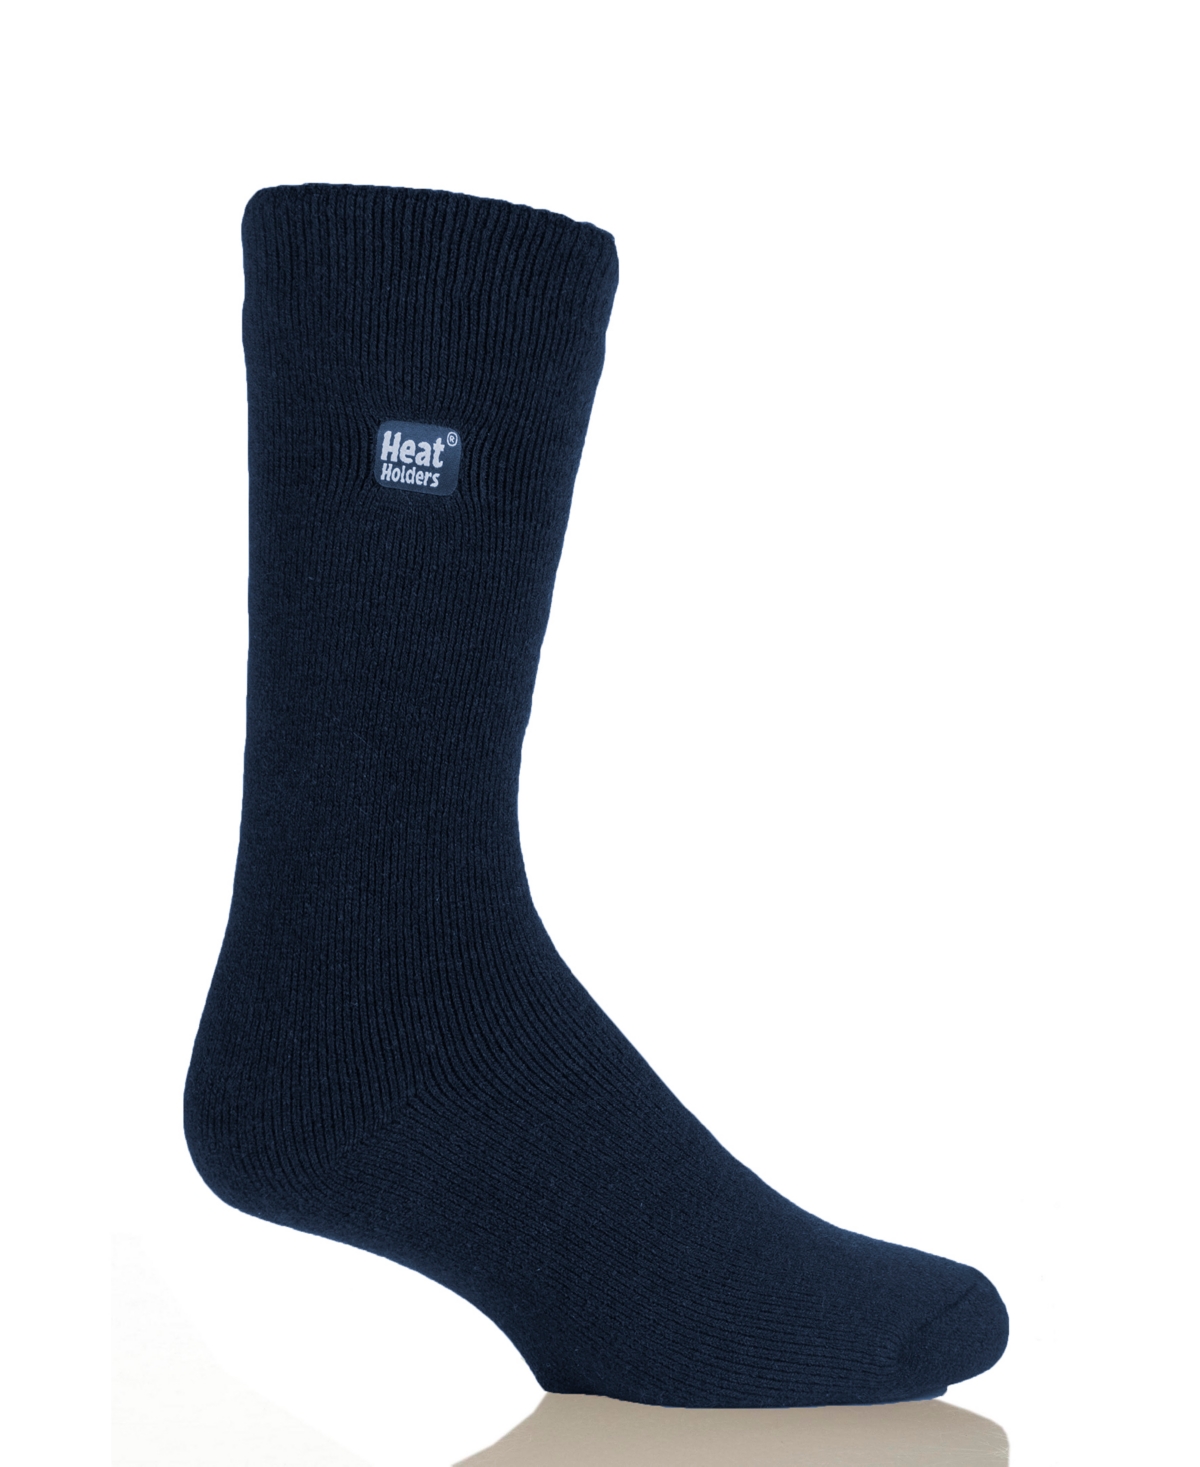 Heat Holders Men's Lite Solid Thermal Socks